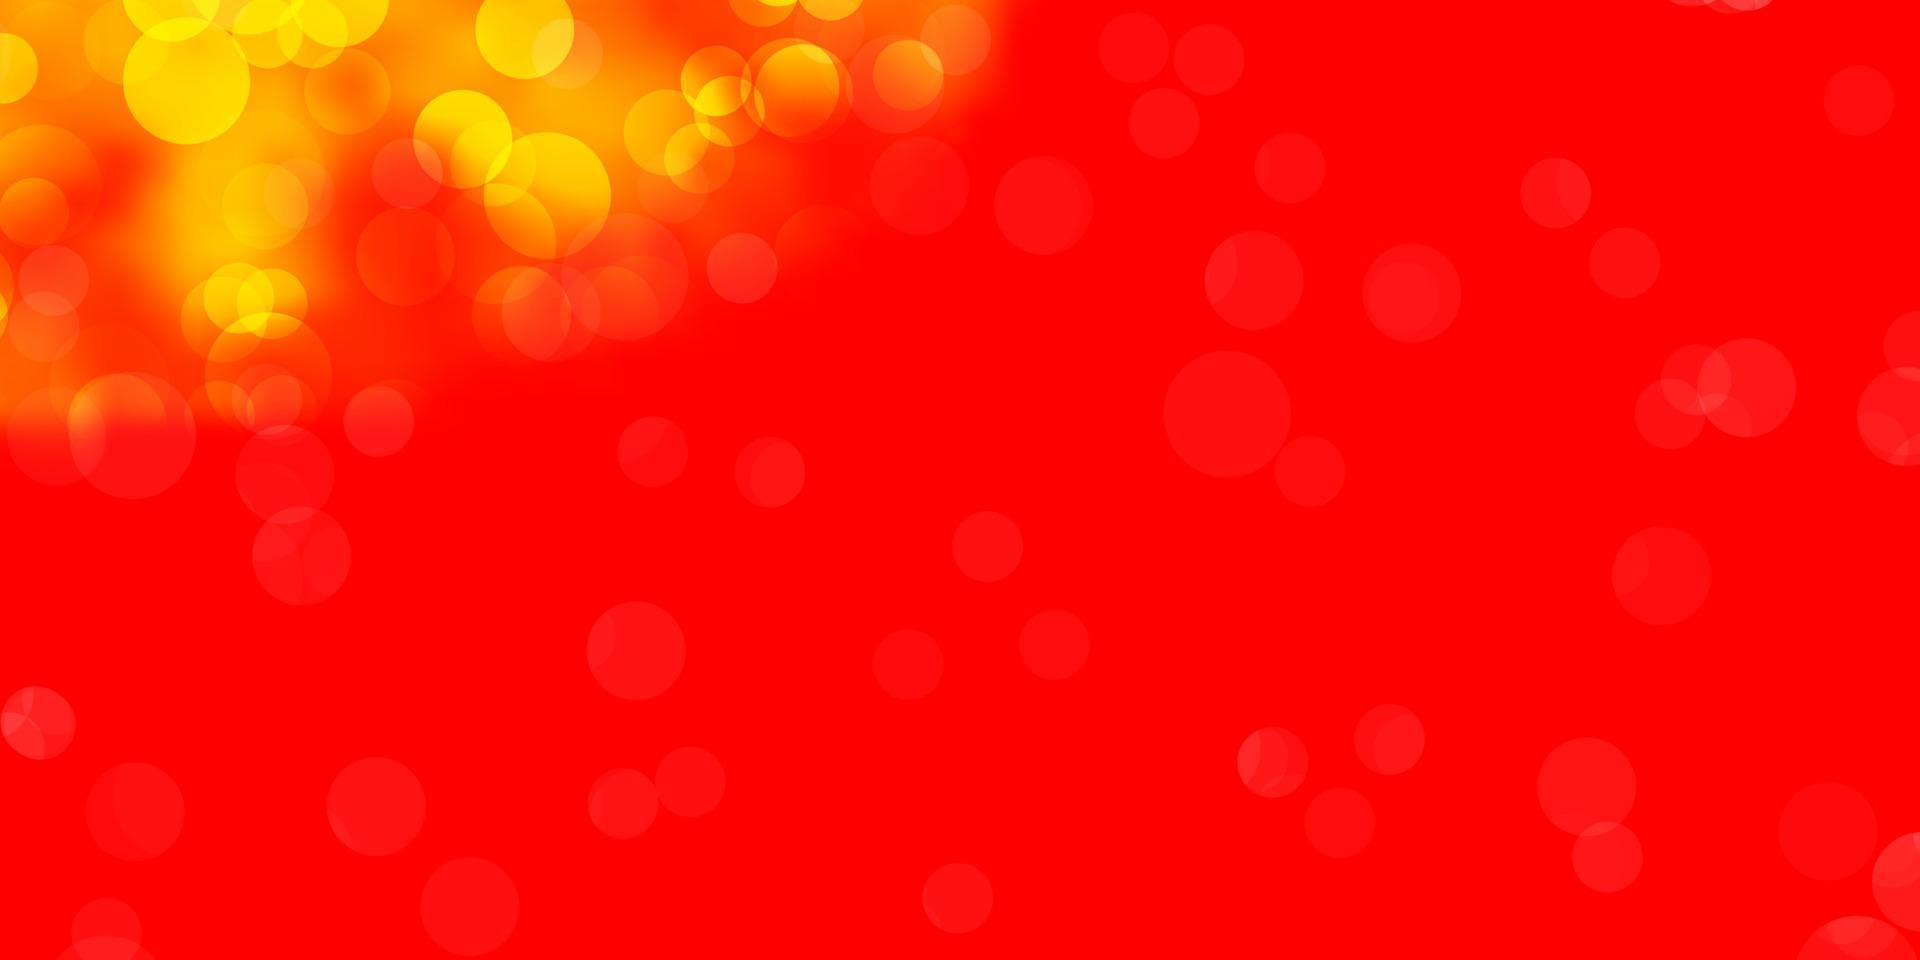 sfondo vettoriale rosso chiaro, giallo con bolle.